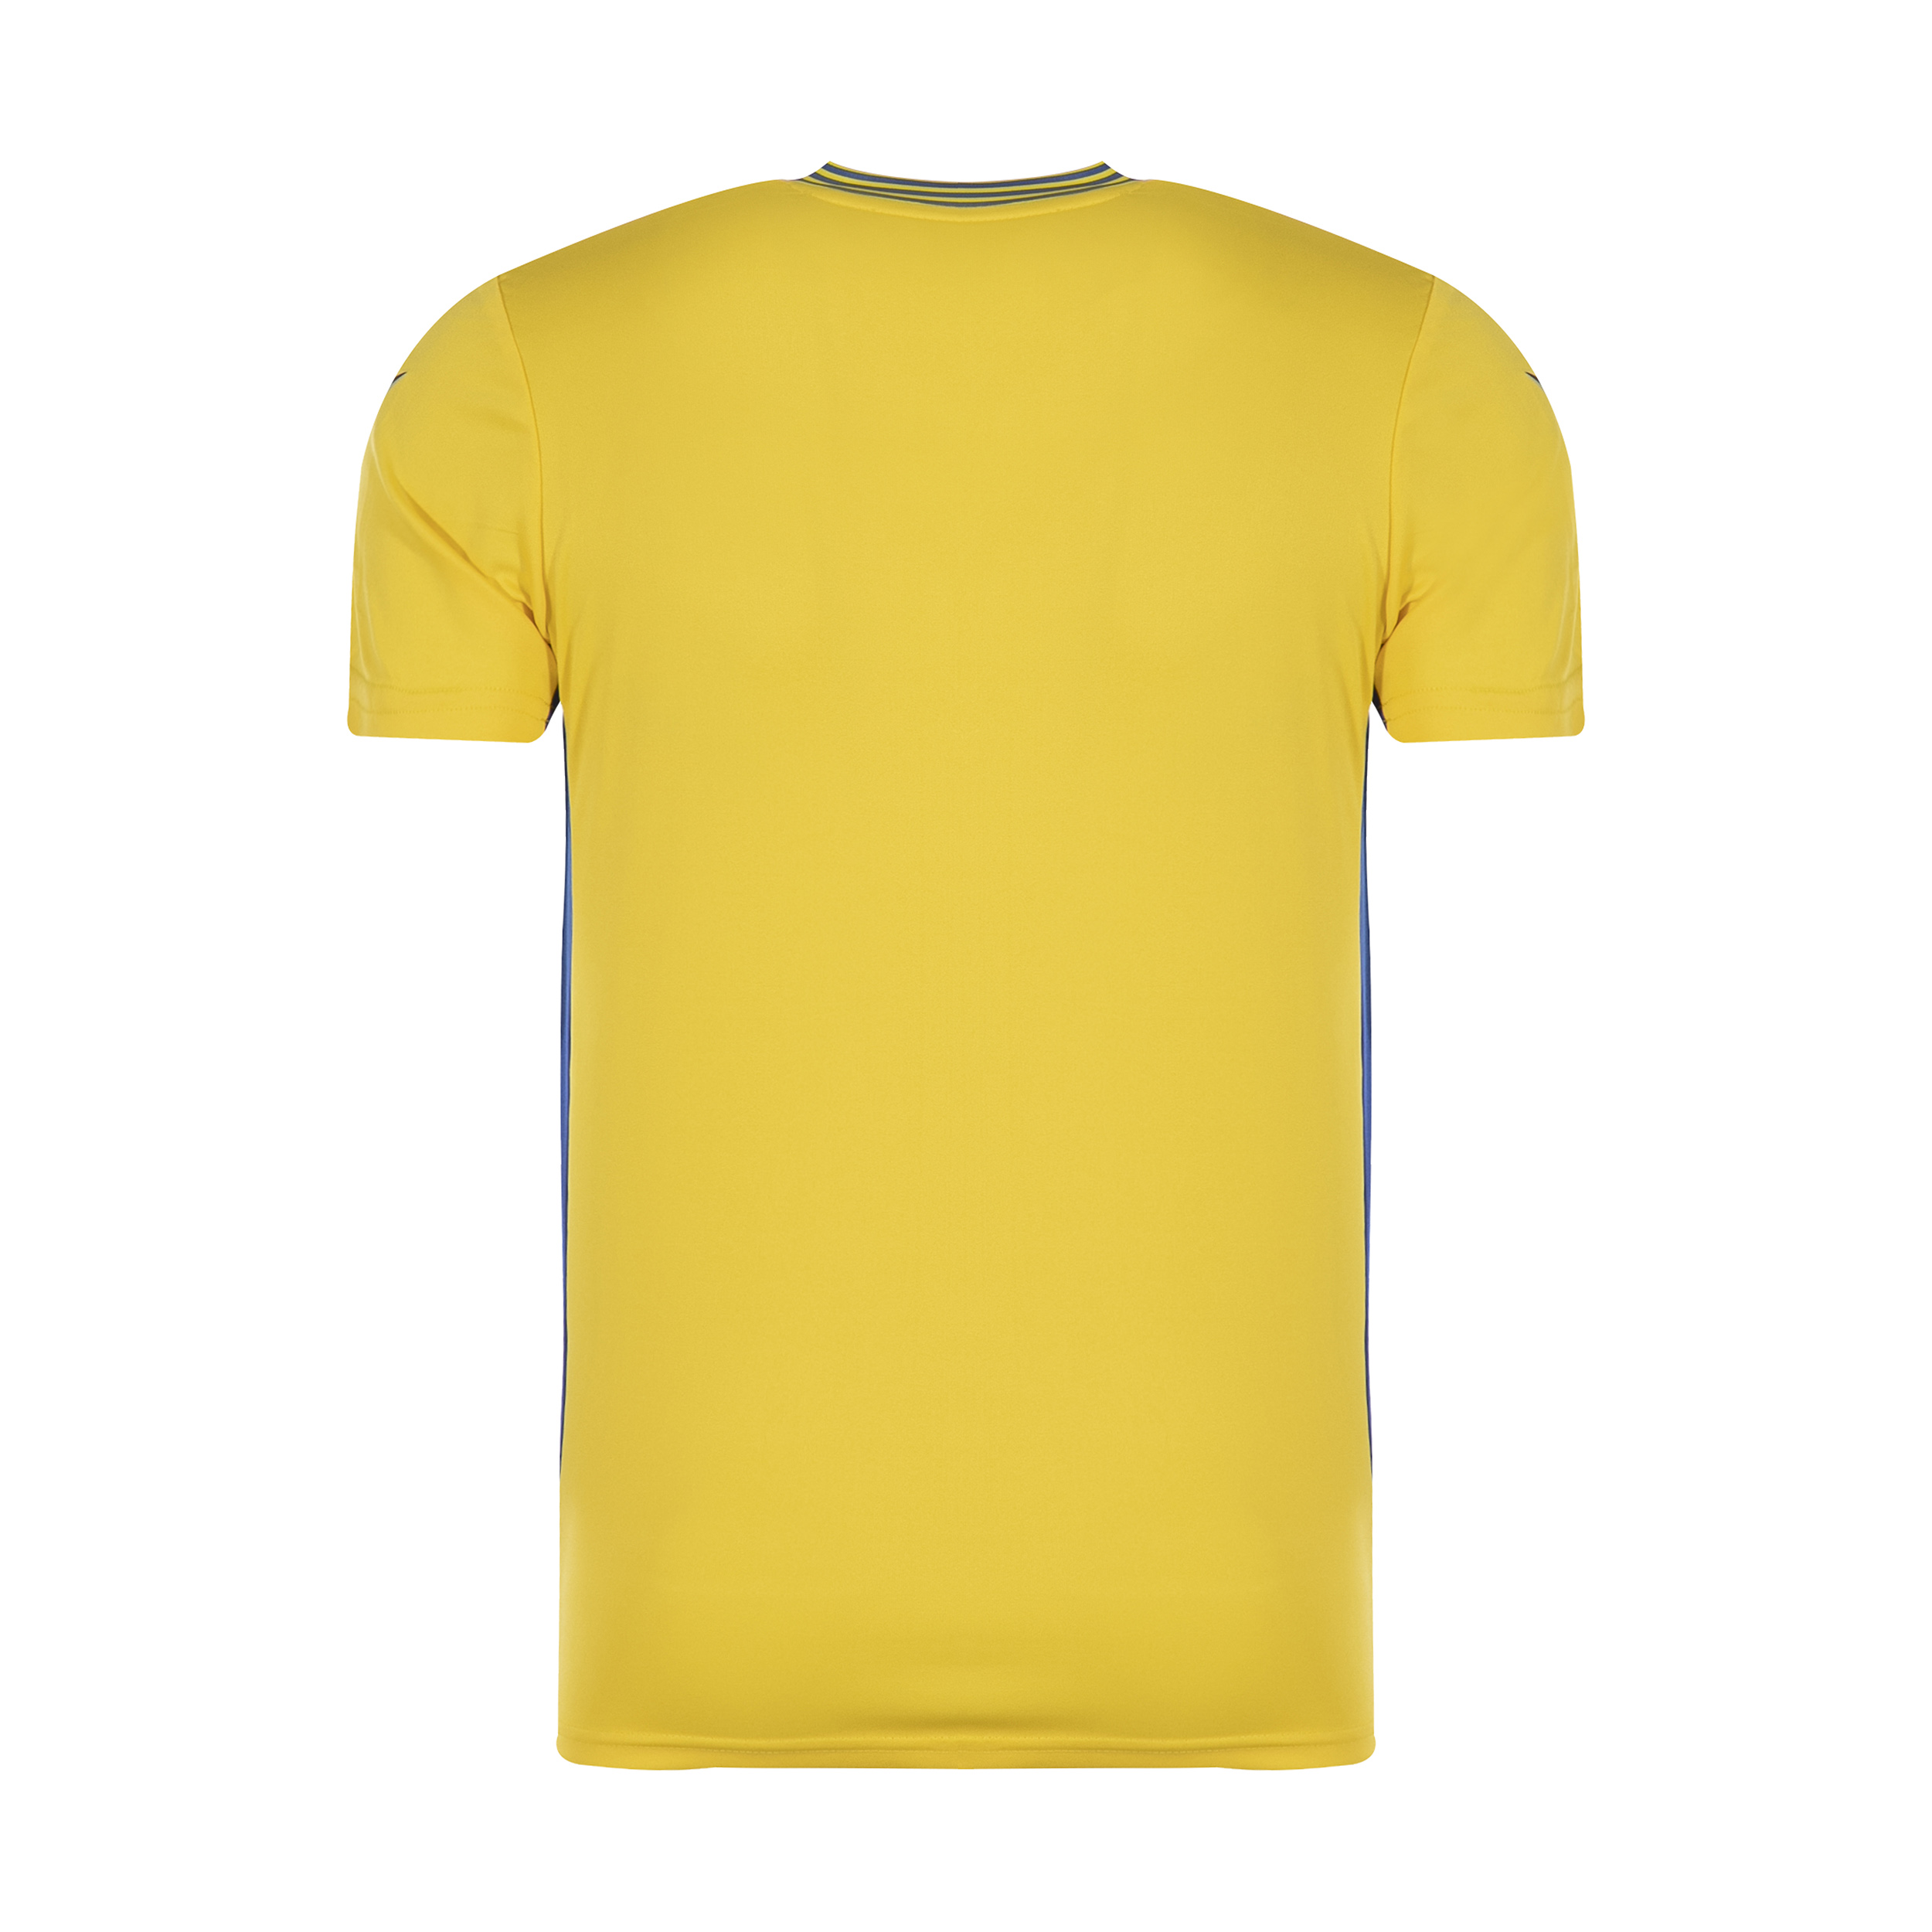 ست تی شرت و شلوارک ورزشی مردانه مکرون مدل کاناپوس رنگ زرد -  - 2